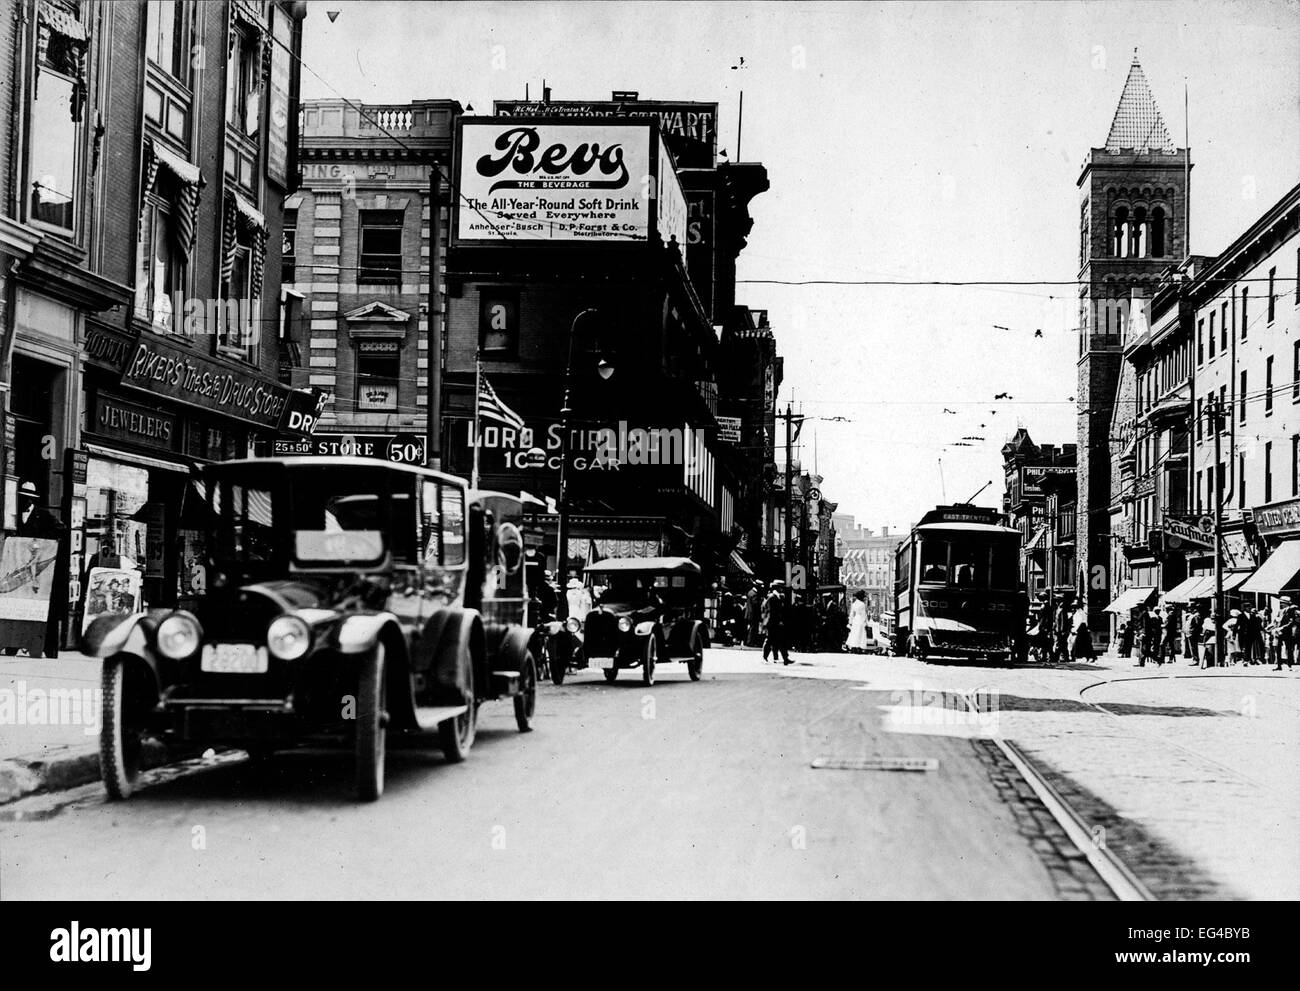 Scena di strada a Stato e ampie strade. Visibili sono periodo automobiles, tram, edificio commerciale, cartelloni pubblicitari " Bevo' (vicino-birra), Trenton, NJ, circa 1920 Foto Stock